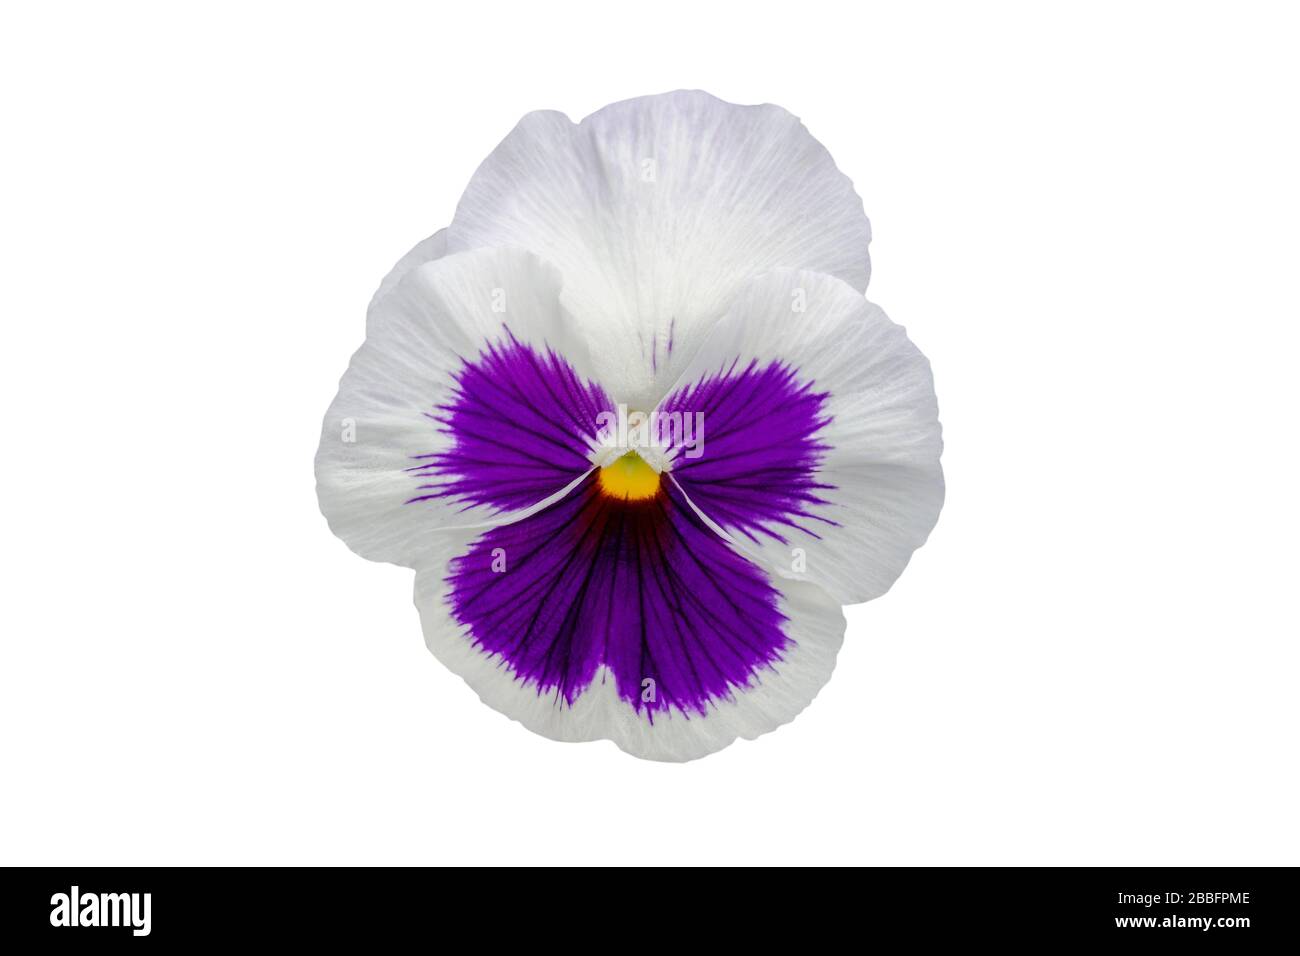 Schöne violette und weiße Pansenblume, isoliert auf weißem Hintergrund Stockfoto